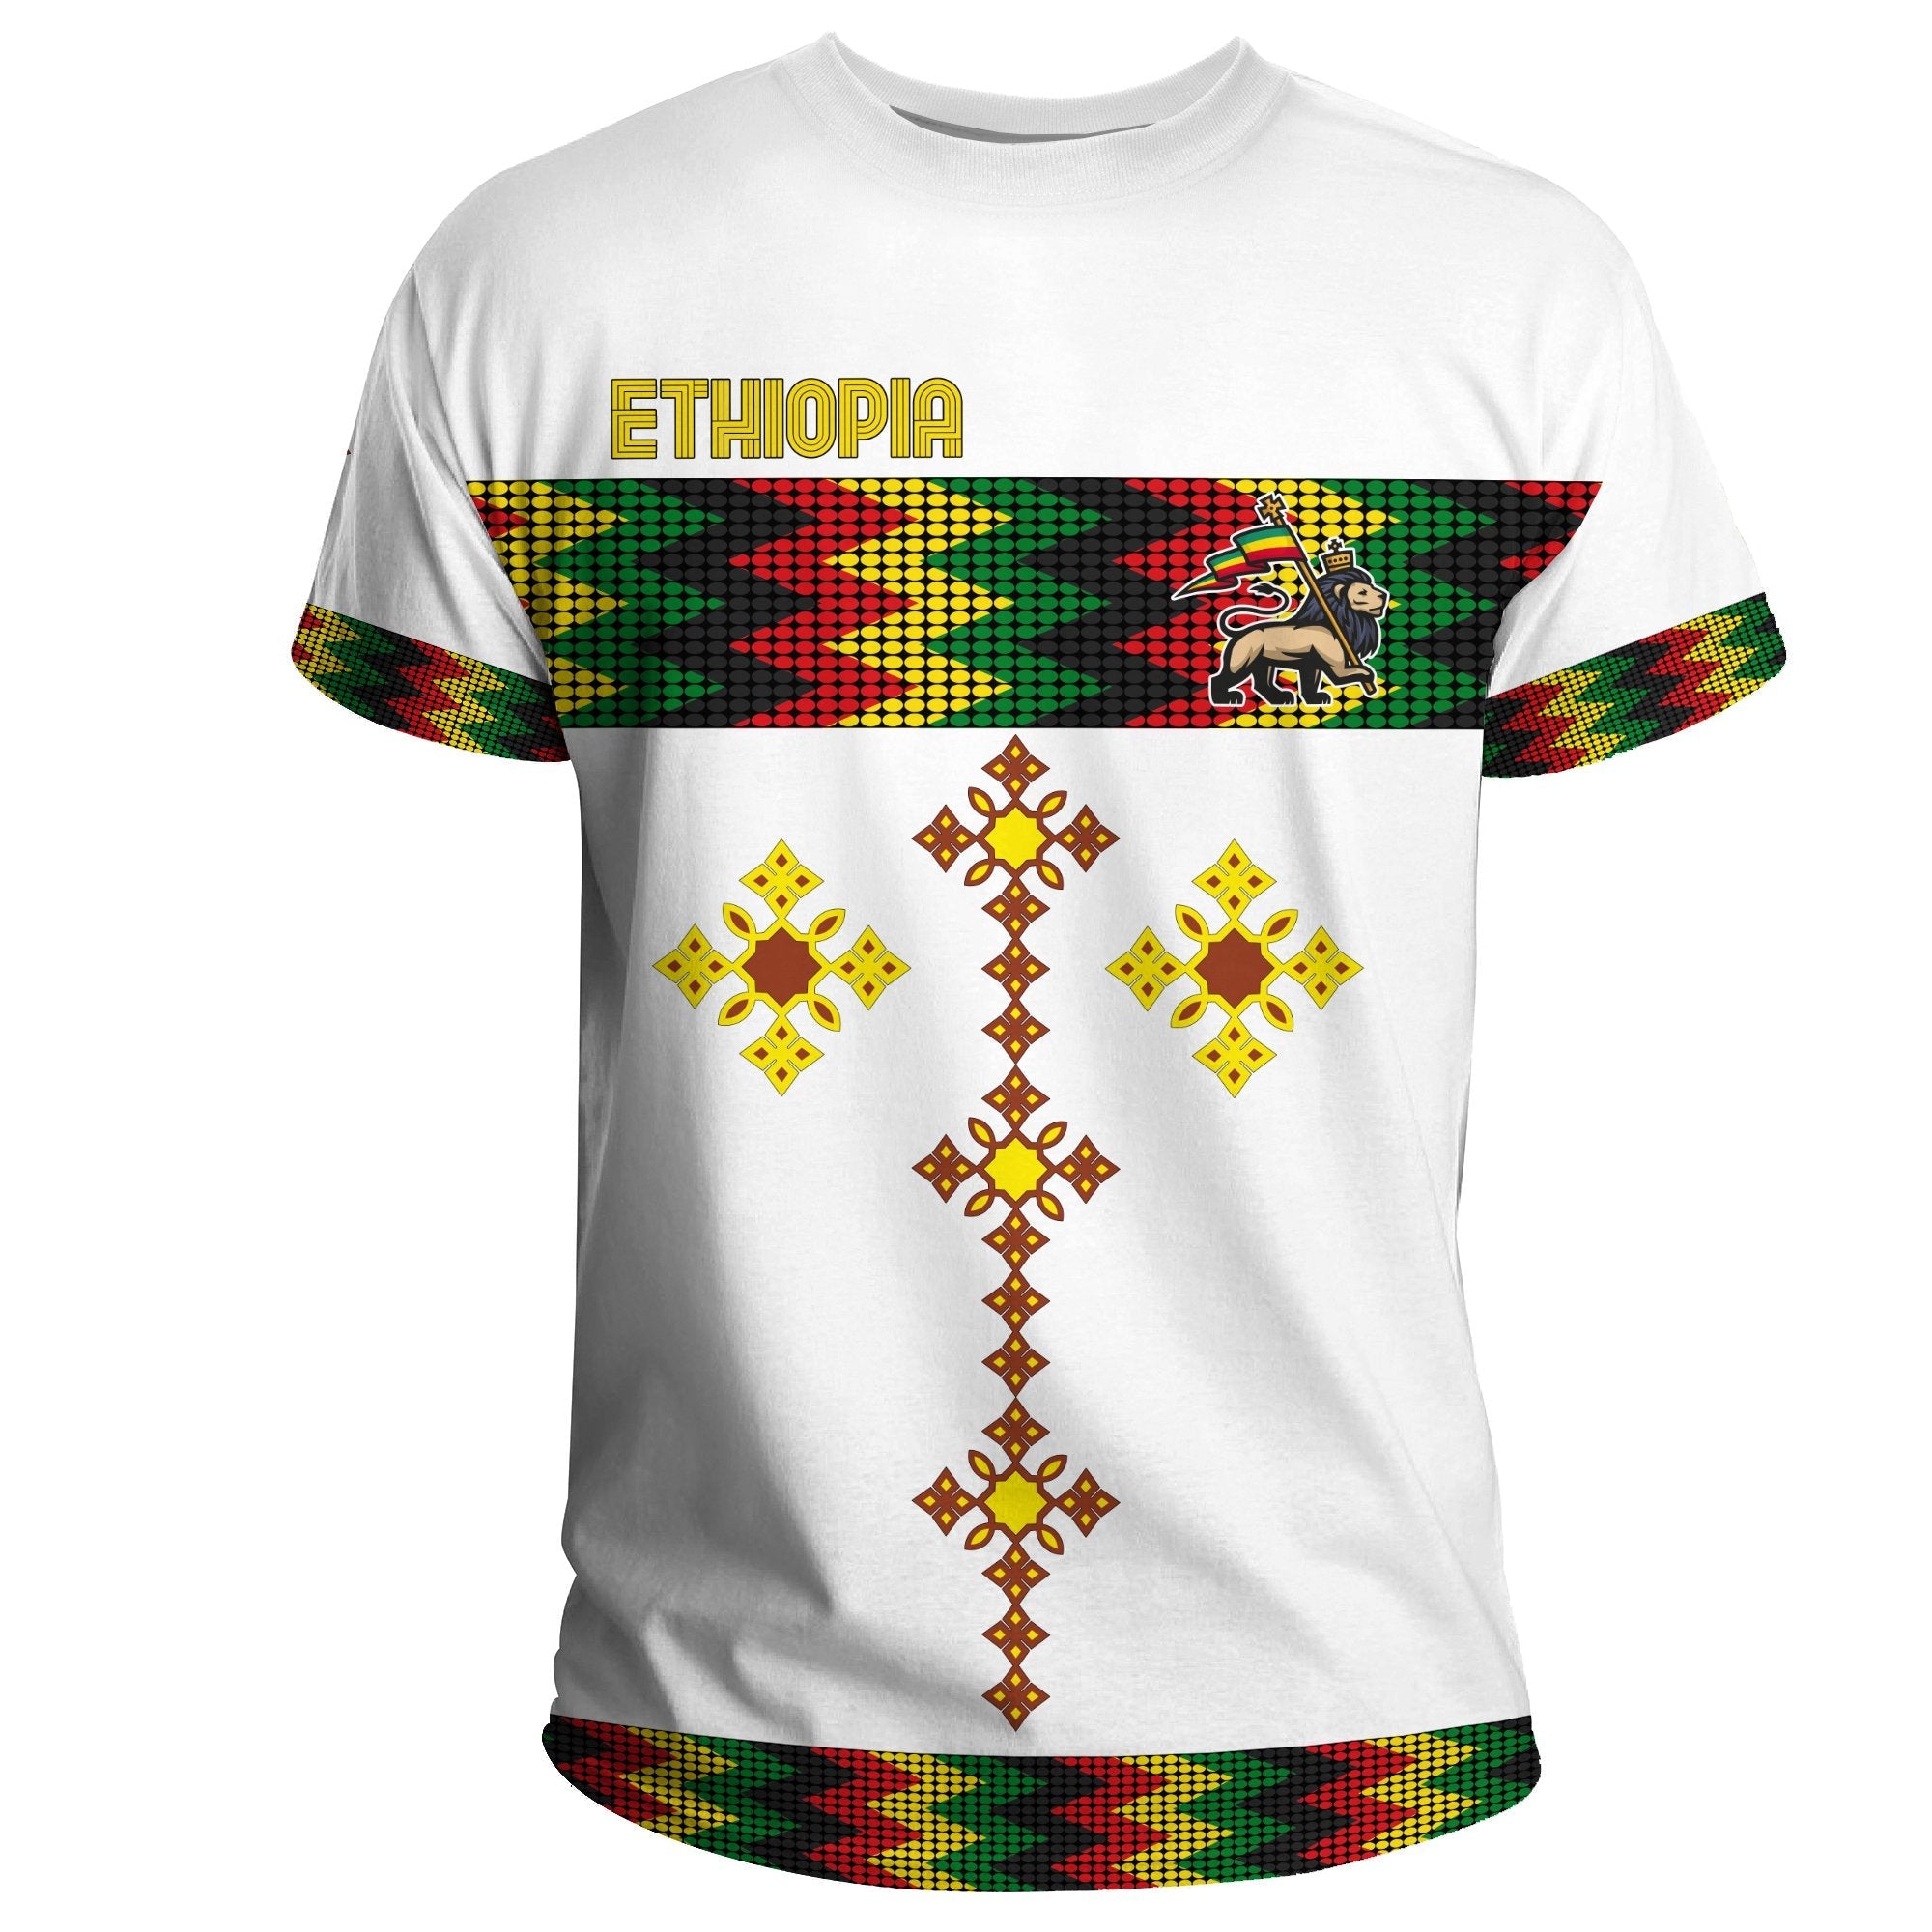 ethiopia-t-shirt-rasta-round-pattern-white